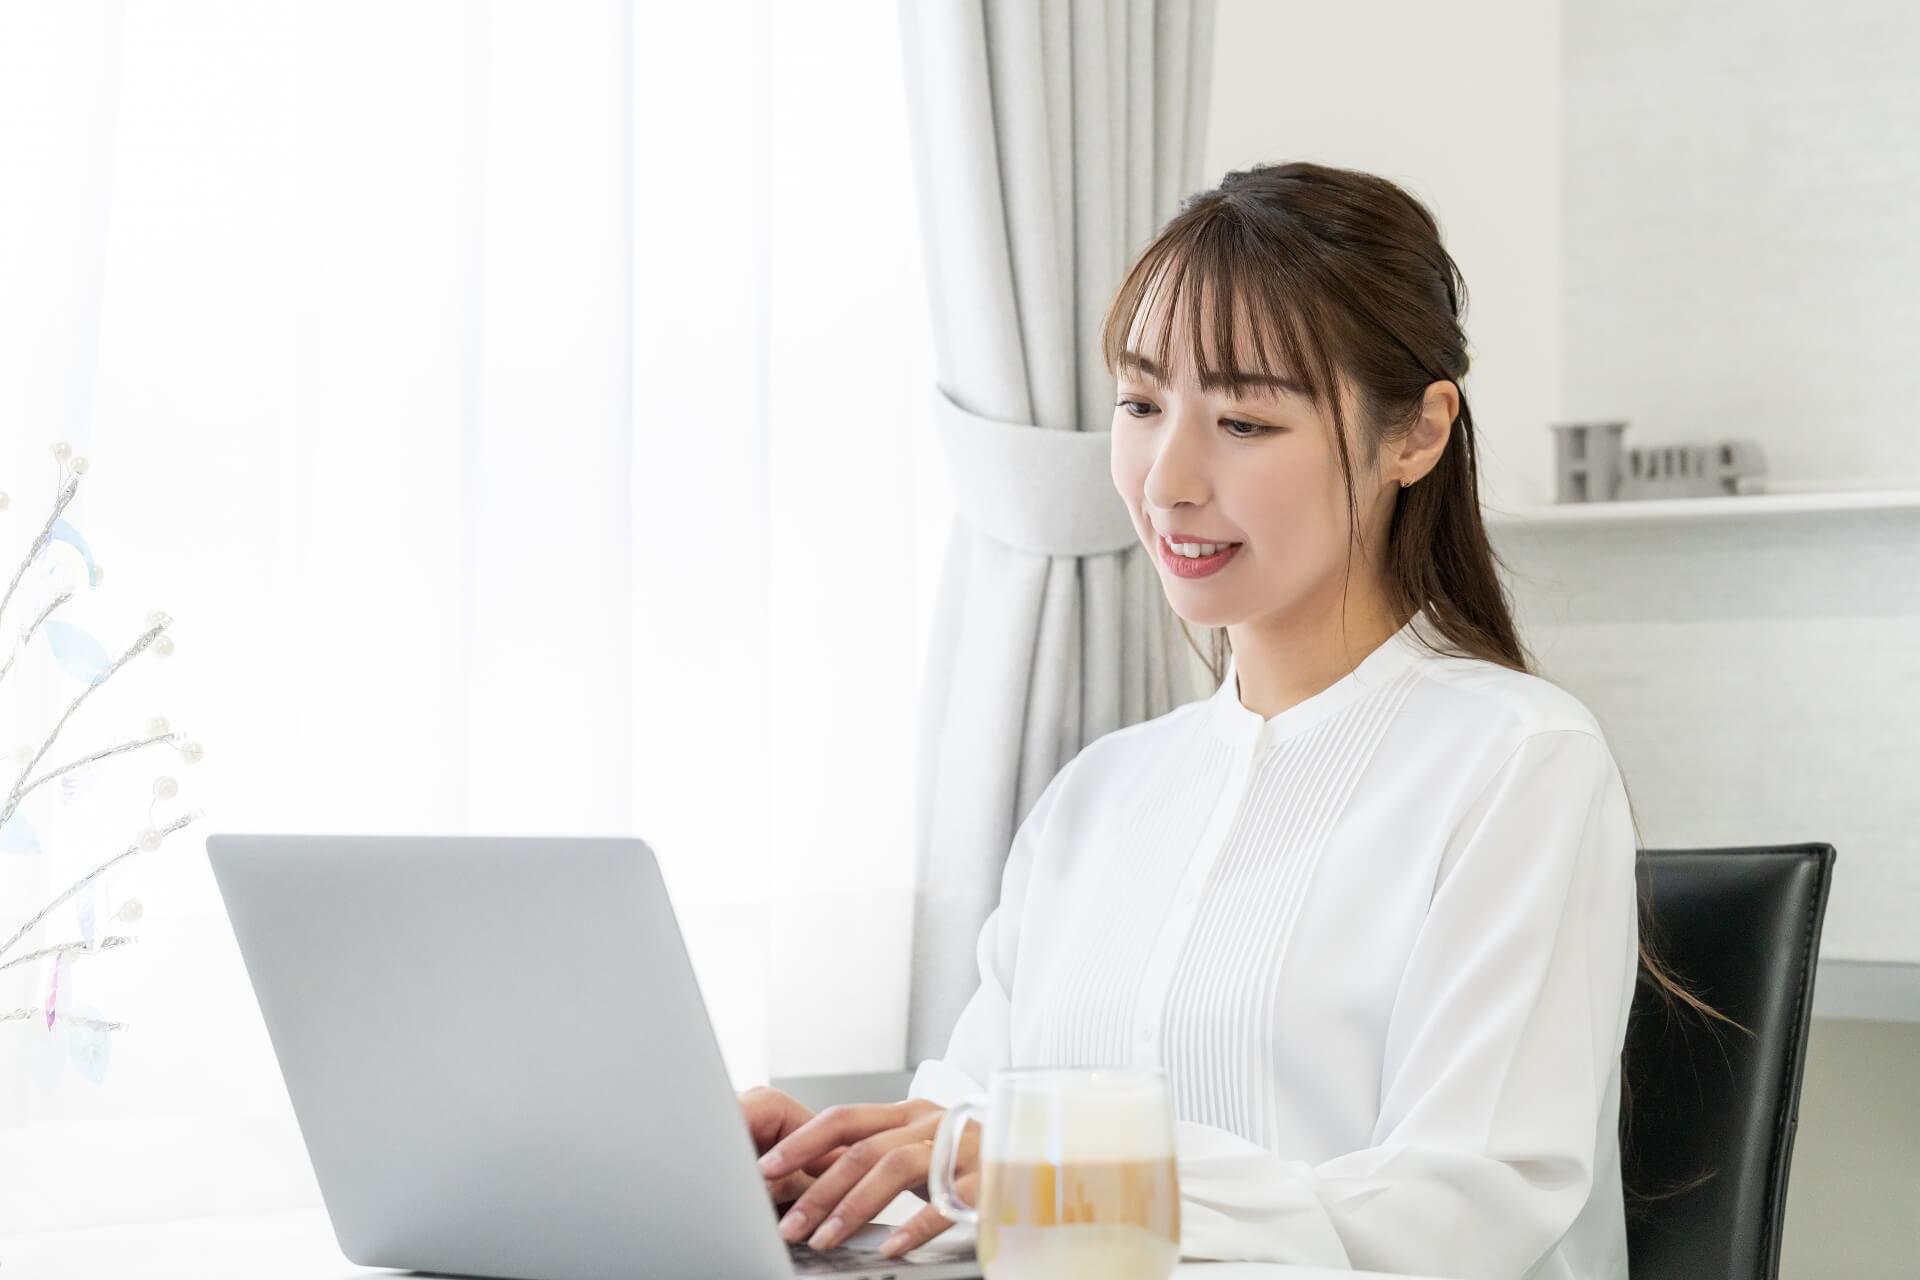 パソコンの前で笑顔を浮かべている女性の画像